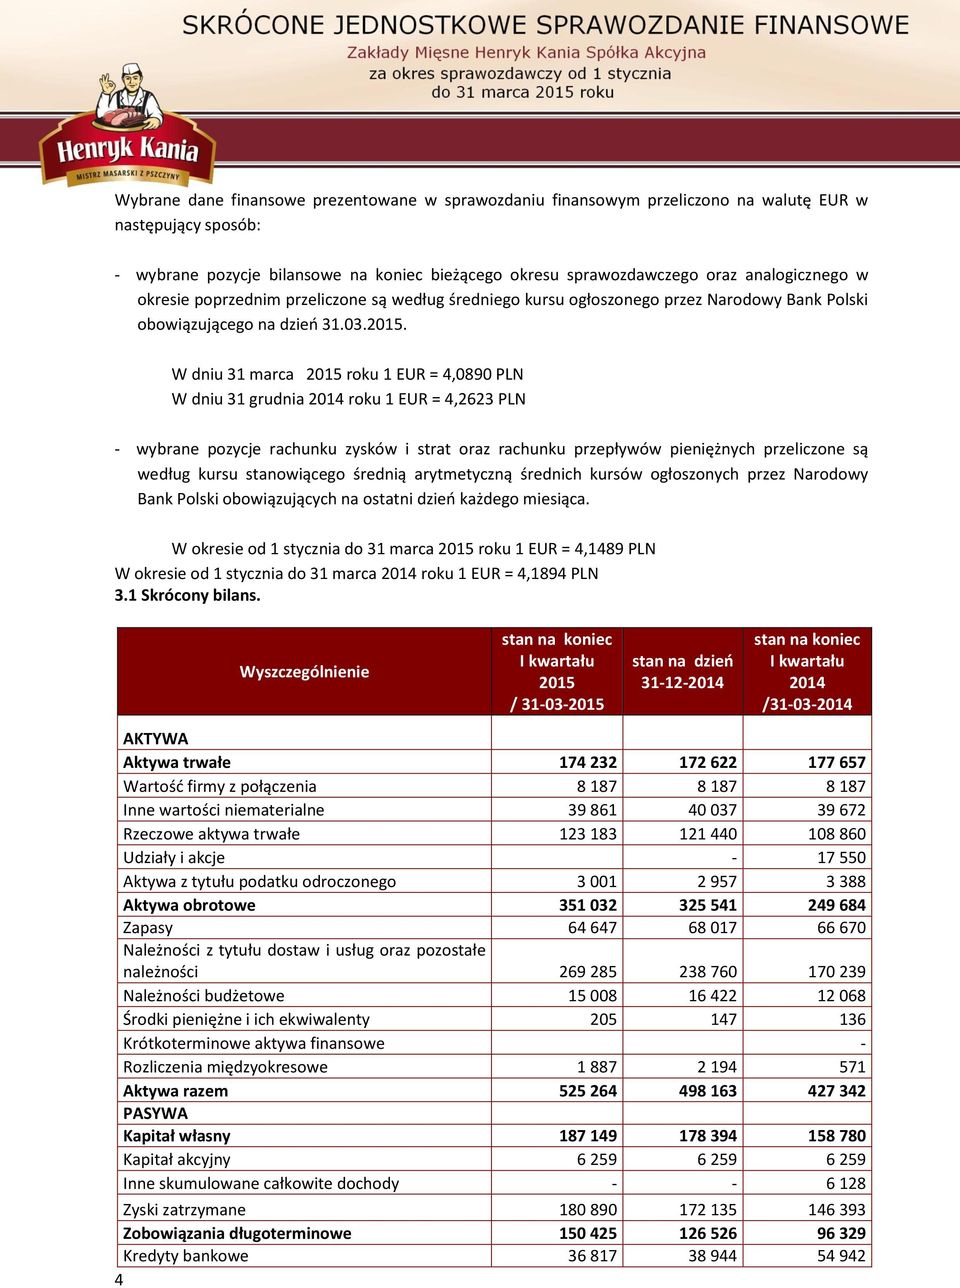 W dniu 31 marca 2015 roku 1 EUR = 4,0890 PLN W dniu 31 grudnia 2014 roku 1 EUR = 4,2623 PLN - wybrane pozycje rachunku zysków i strat oraz rachunku przepływów pieniężnych przeliczone są według kursu